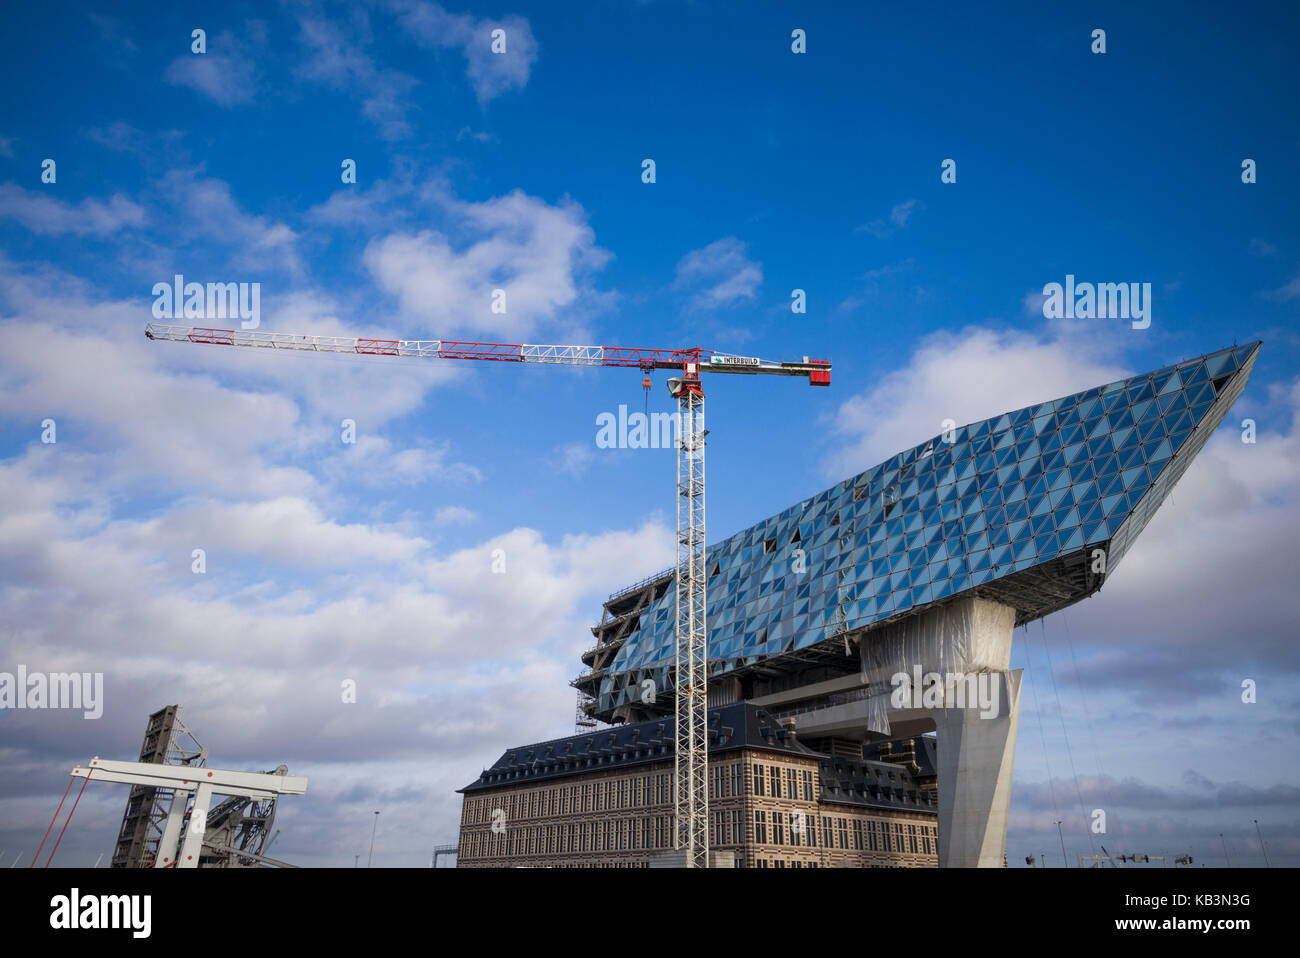 Bélgica, Amberes, el nuevo edificio de la autoridad portuaria de Amberes, Zaha Hadid, arquitecto Foto de stock